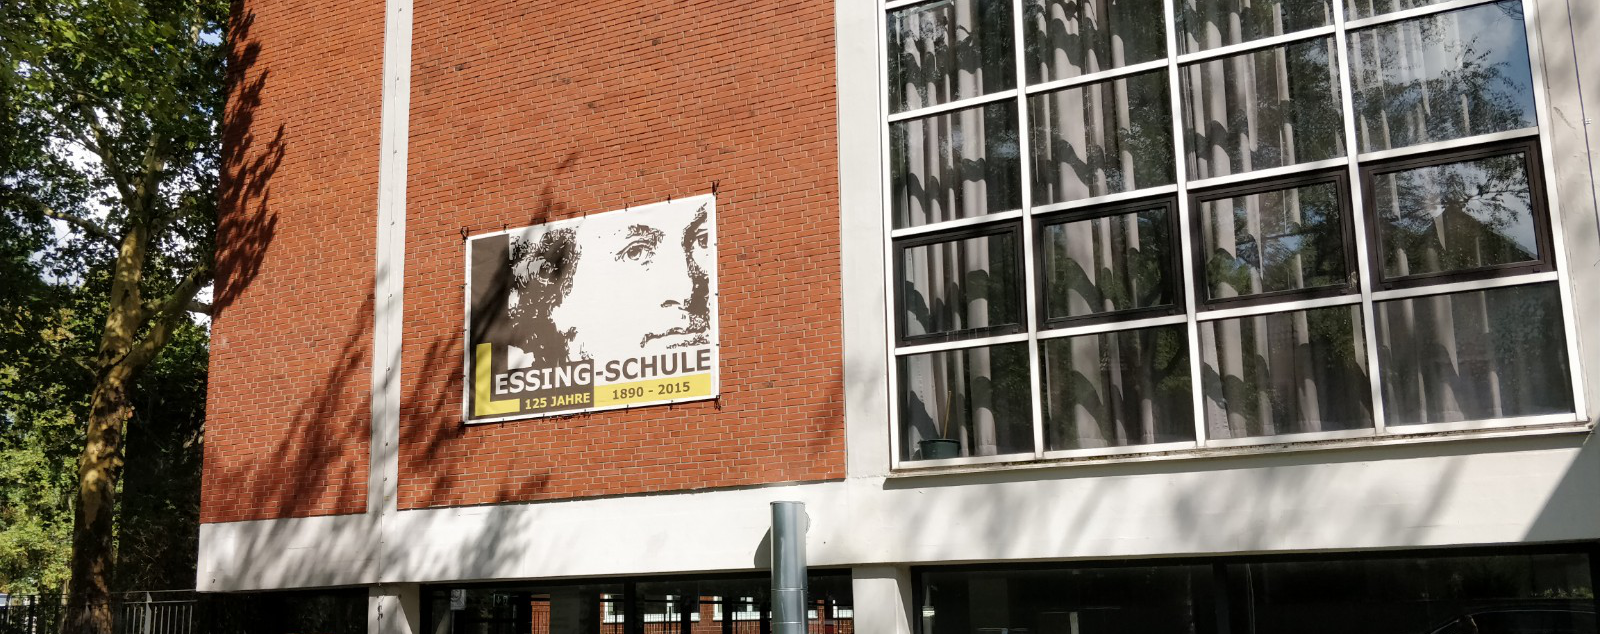 Lessing-Schule Bochum